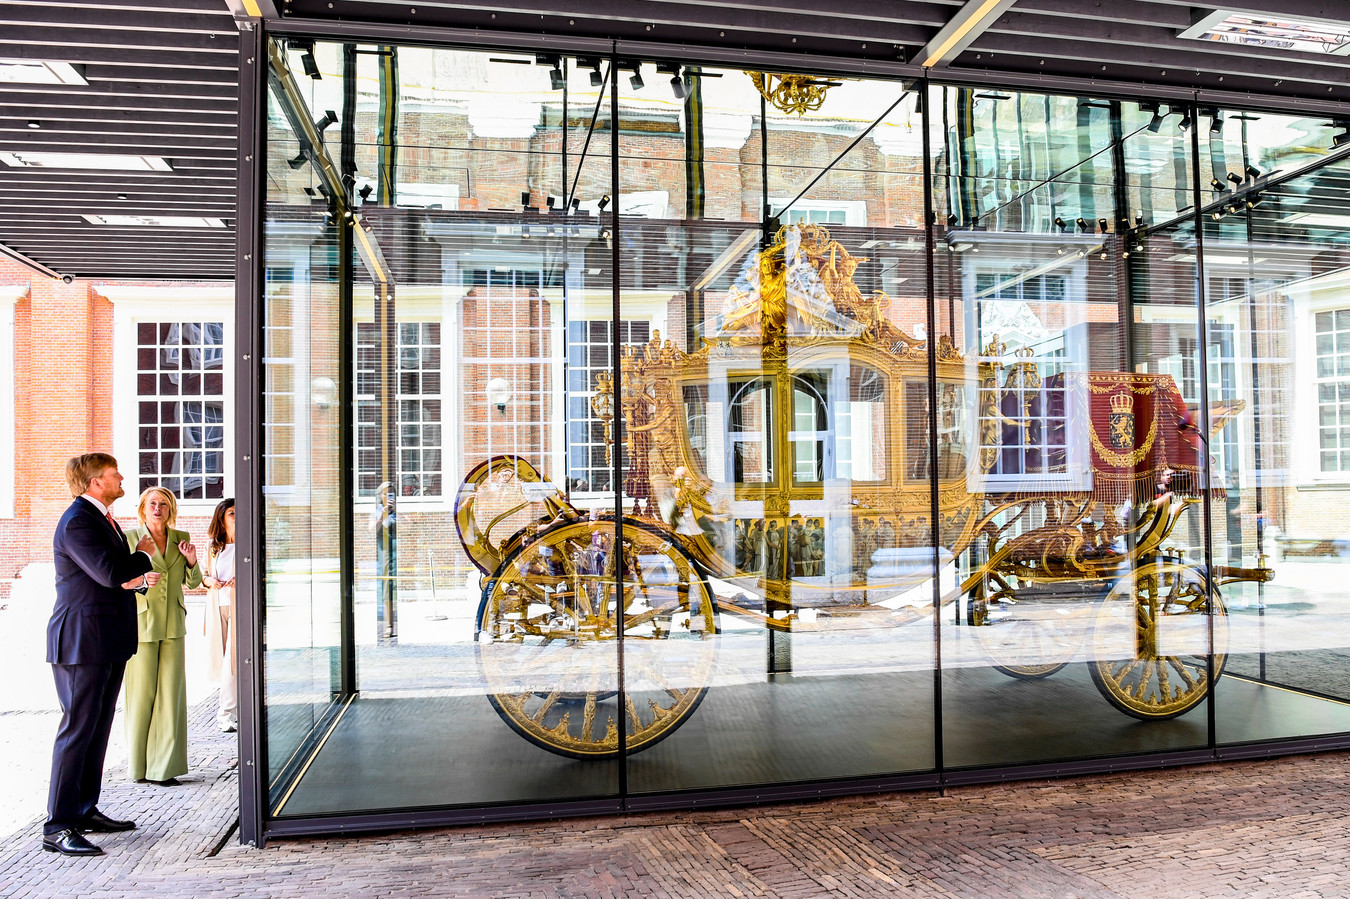 Koning Willem Alexander tijdensde opening van de tentoonstelling ?e Gouden Koets' in het Amsterdam Museum. Na een restauratie van ruim 5 jaar zal de Gouden Koets van vrijdag 18 juni tot zondag 27 februari 2022 te bezichtigen zijn voor publiek.